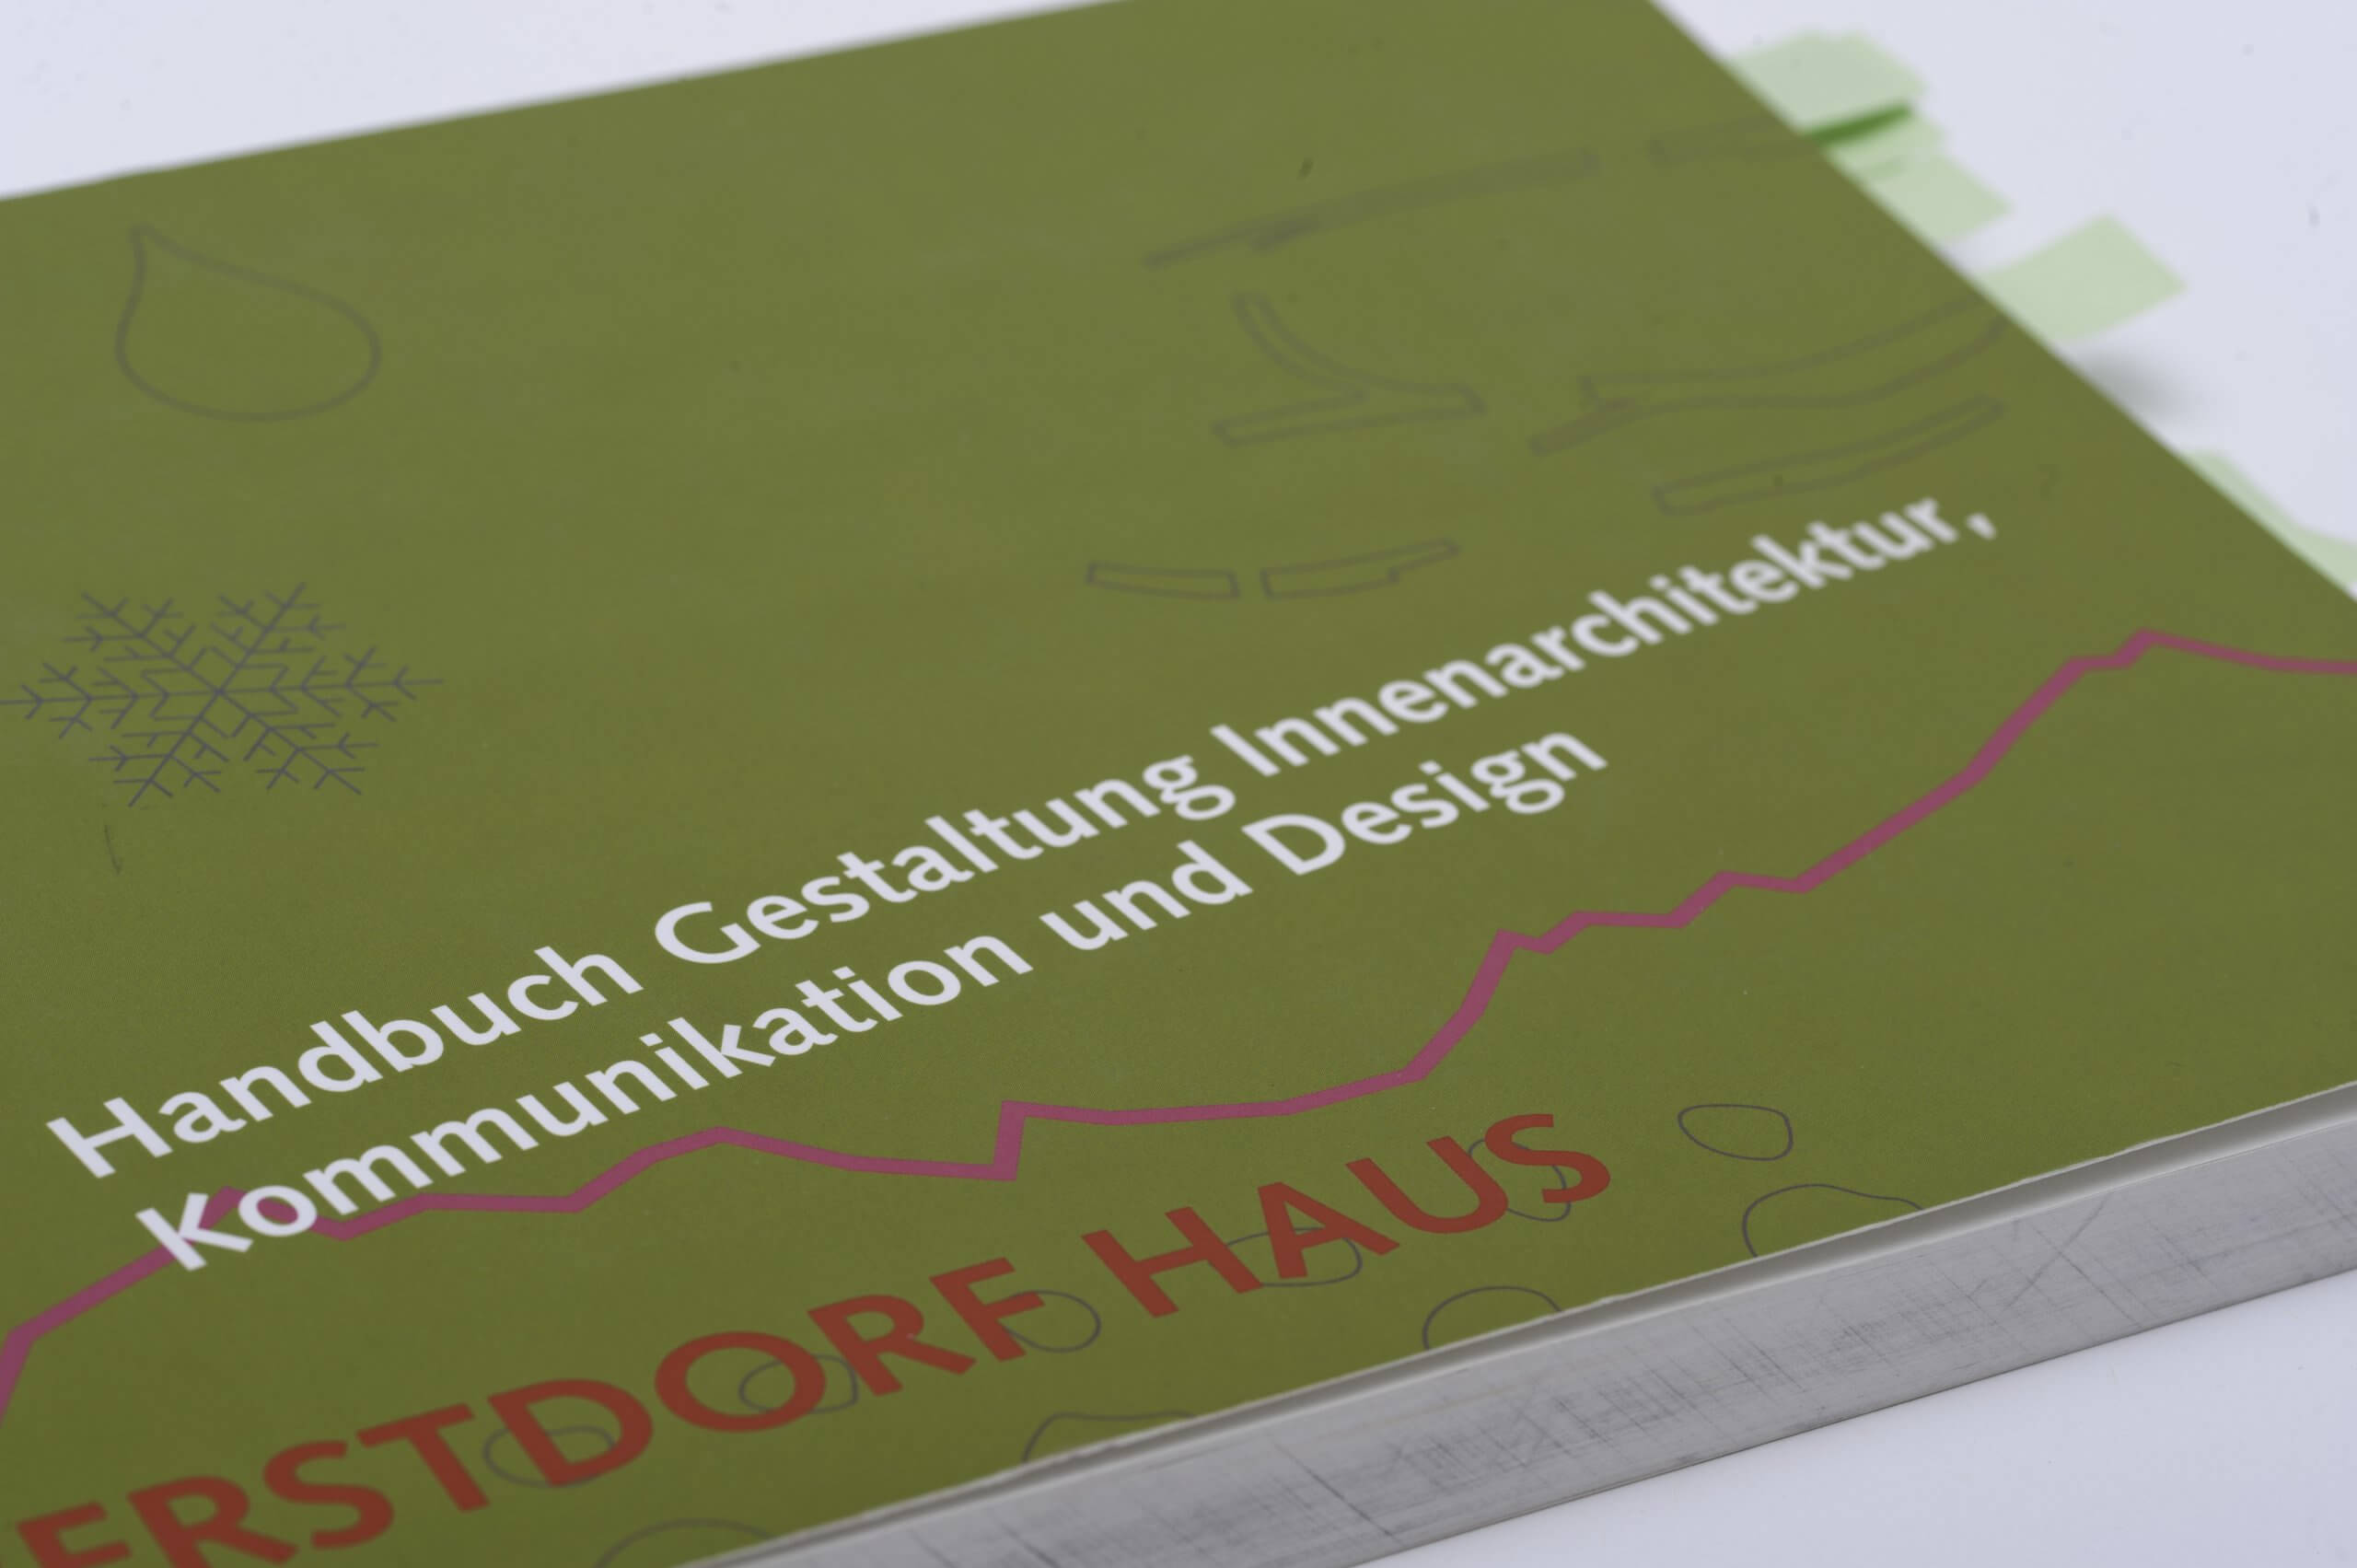 Handbuch zur Markenentwicklung für das Kurhaus Oberstdorf.